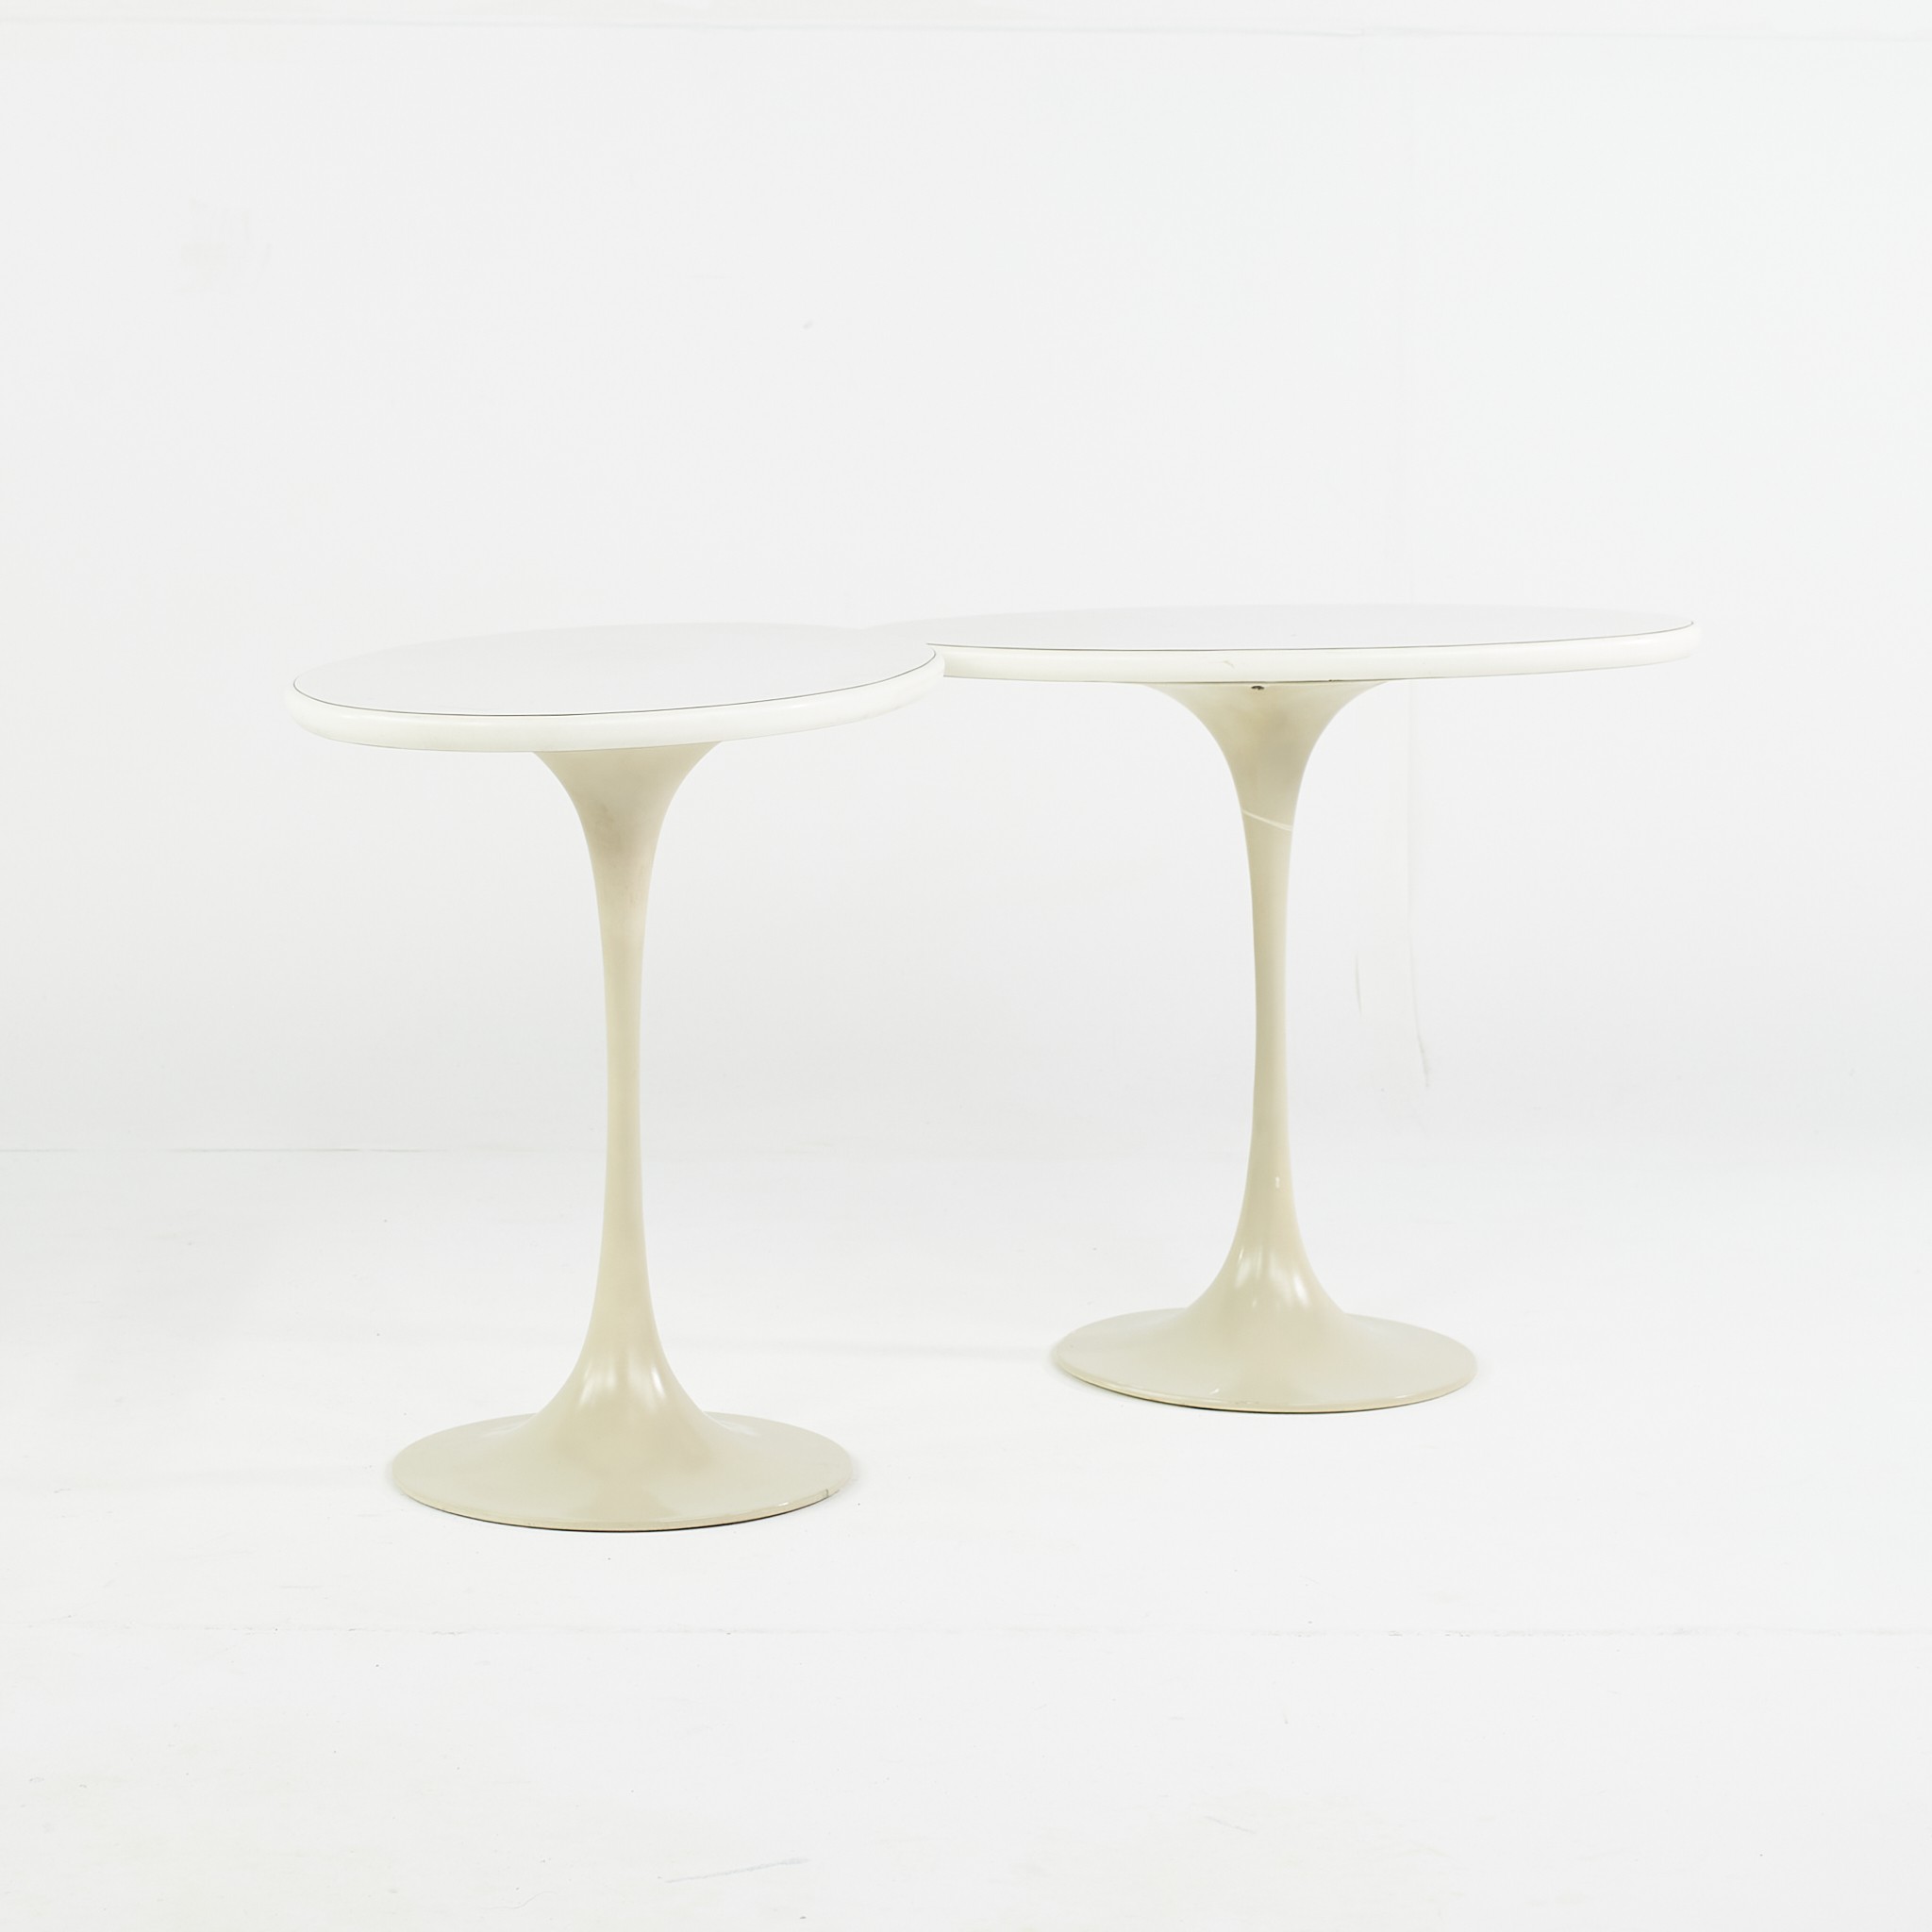 Eero Saarinen for Knoll Style Mid Century Oval Tulip Tables - a Pair